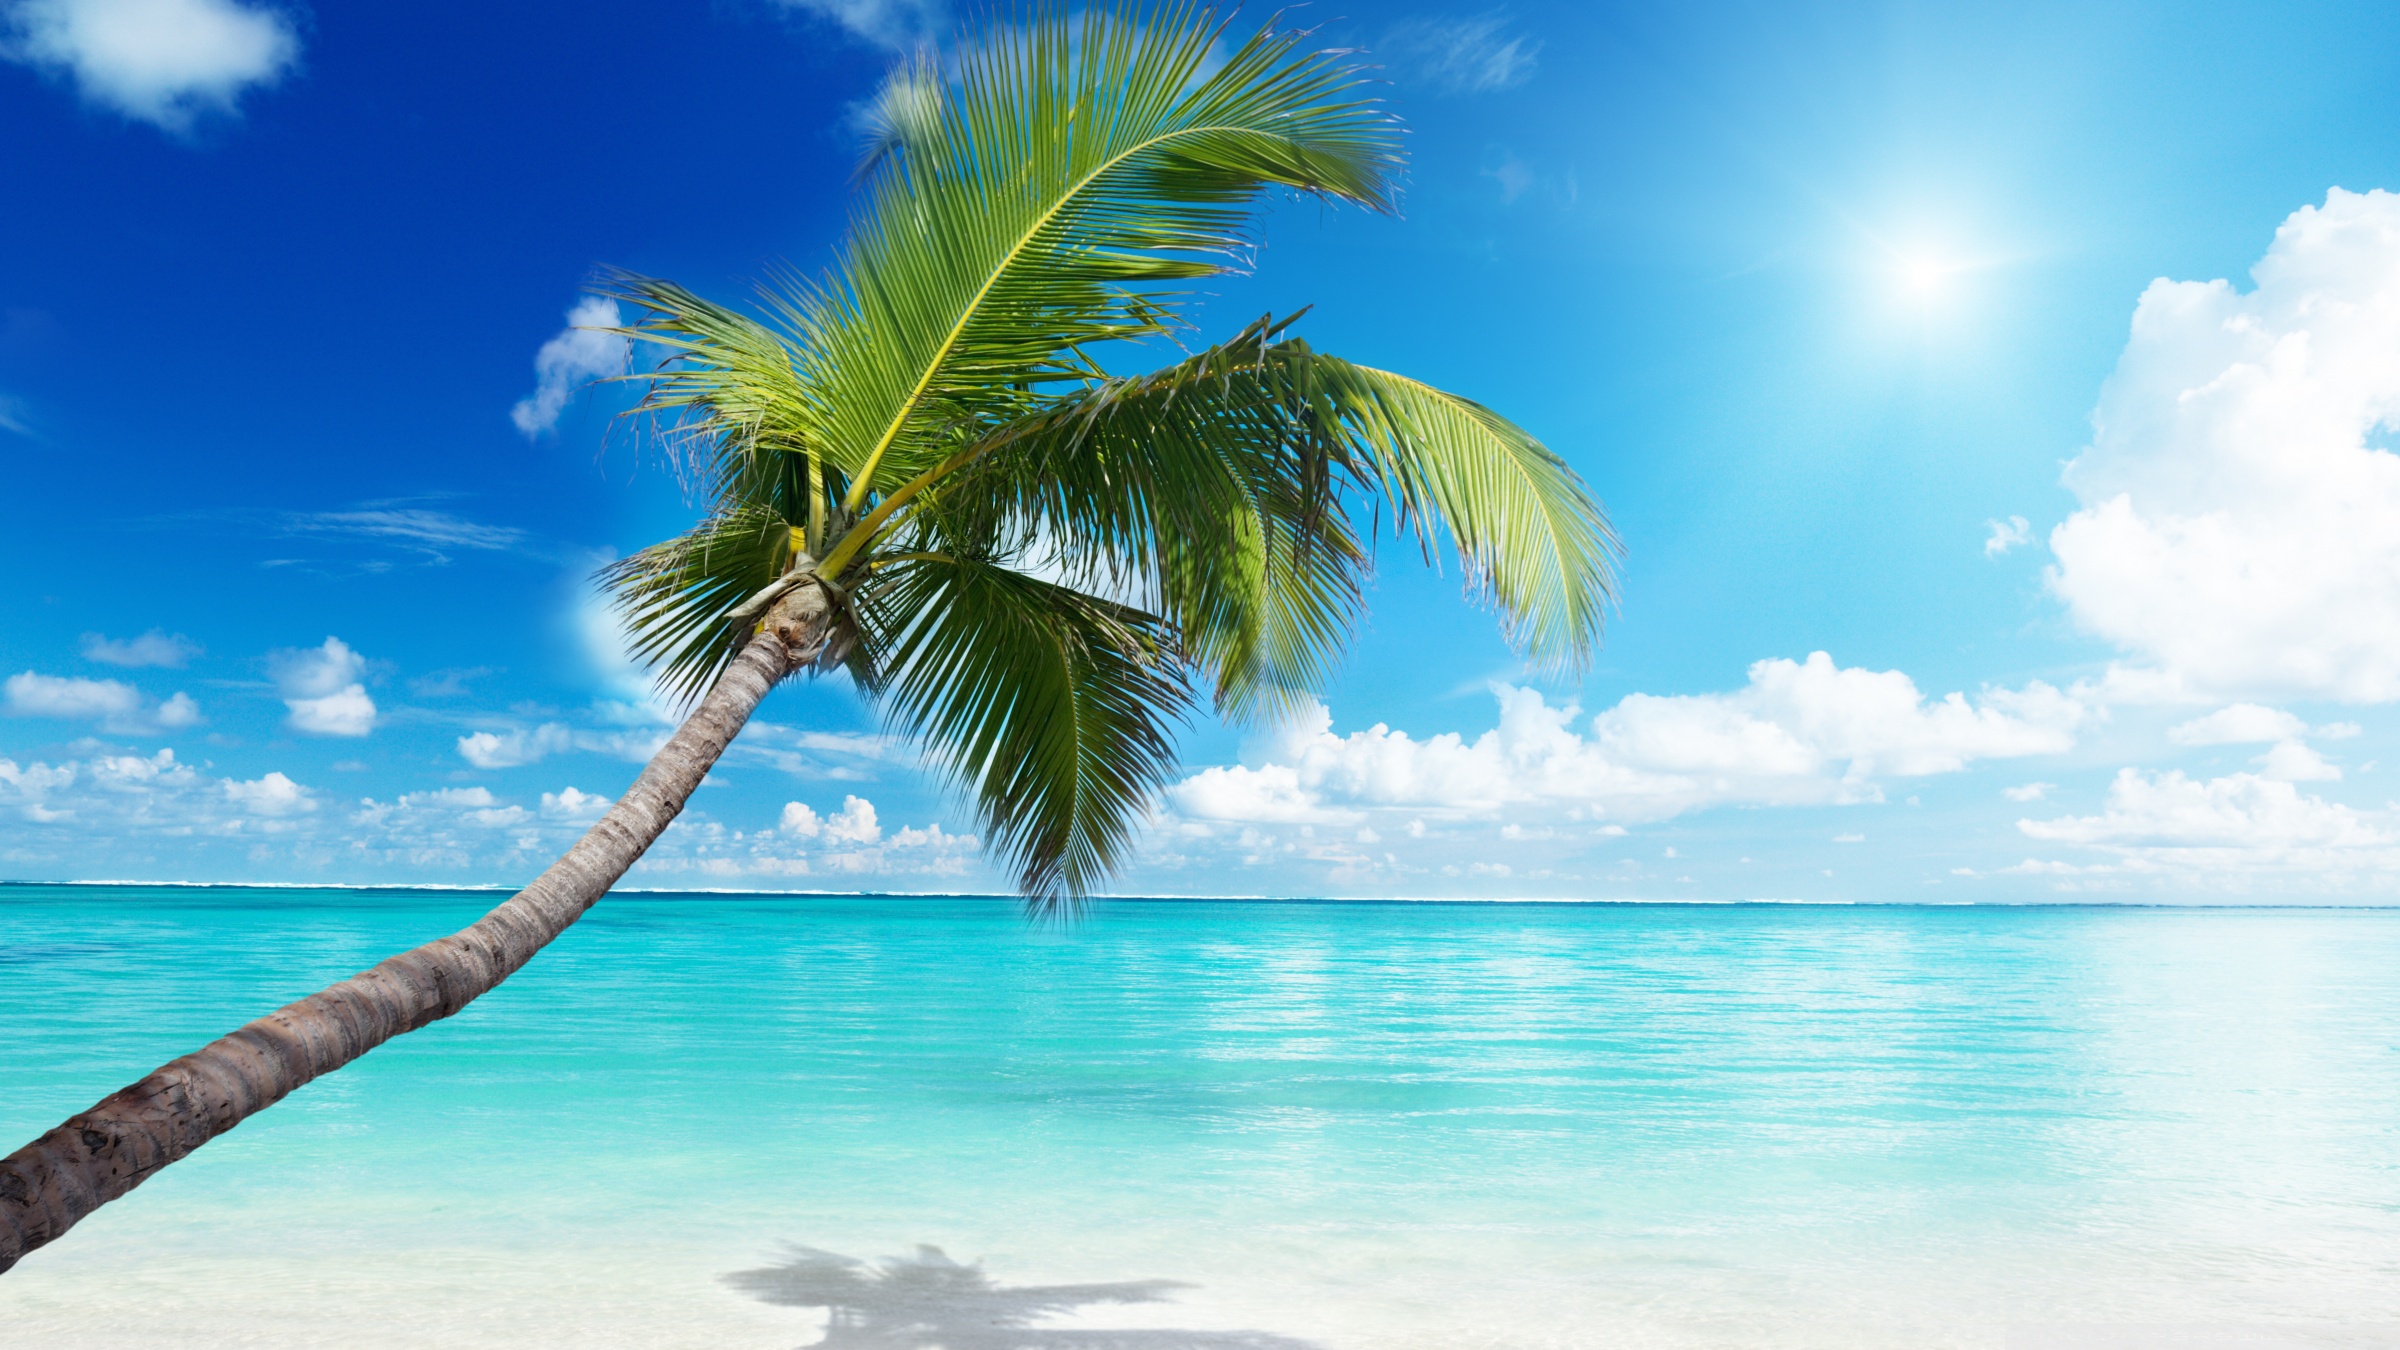 Palm Tree Beach ❤ 4K HD Desktop Wallpaper for 4K Ultra HD TV • Wide ...